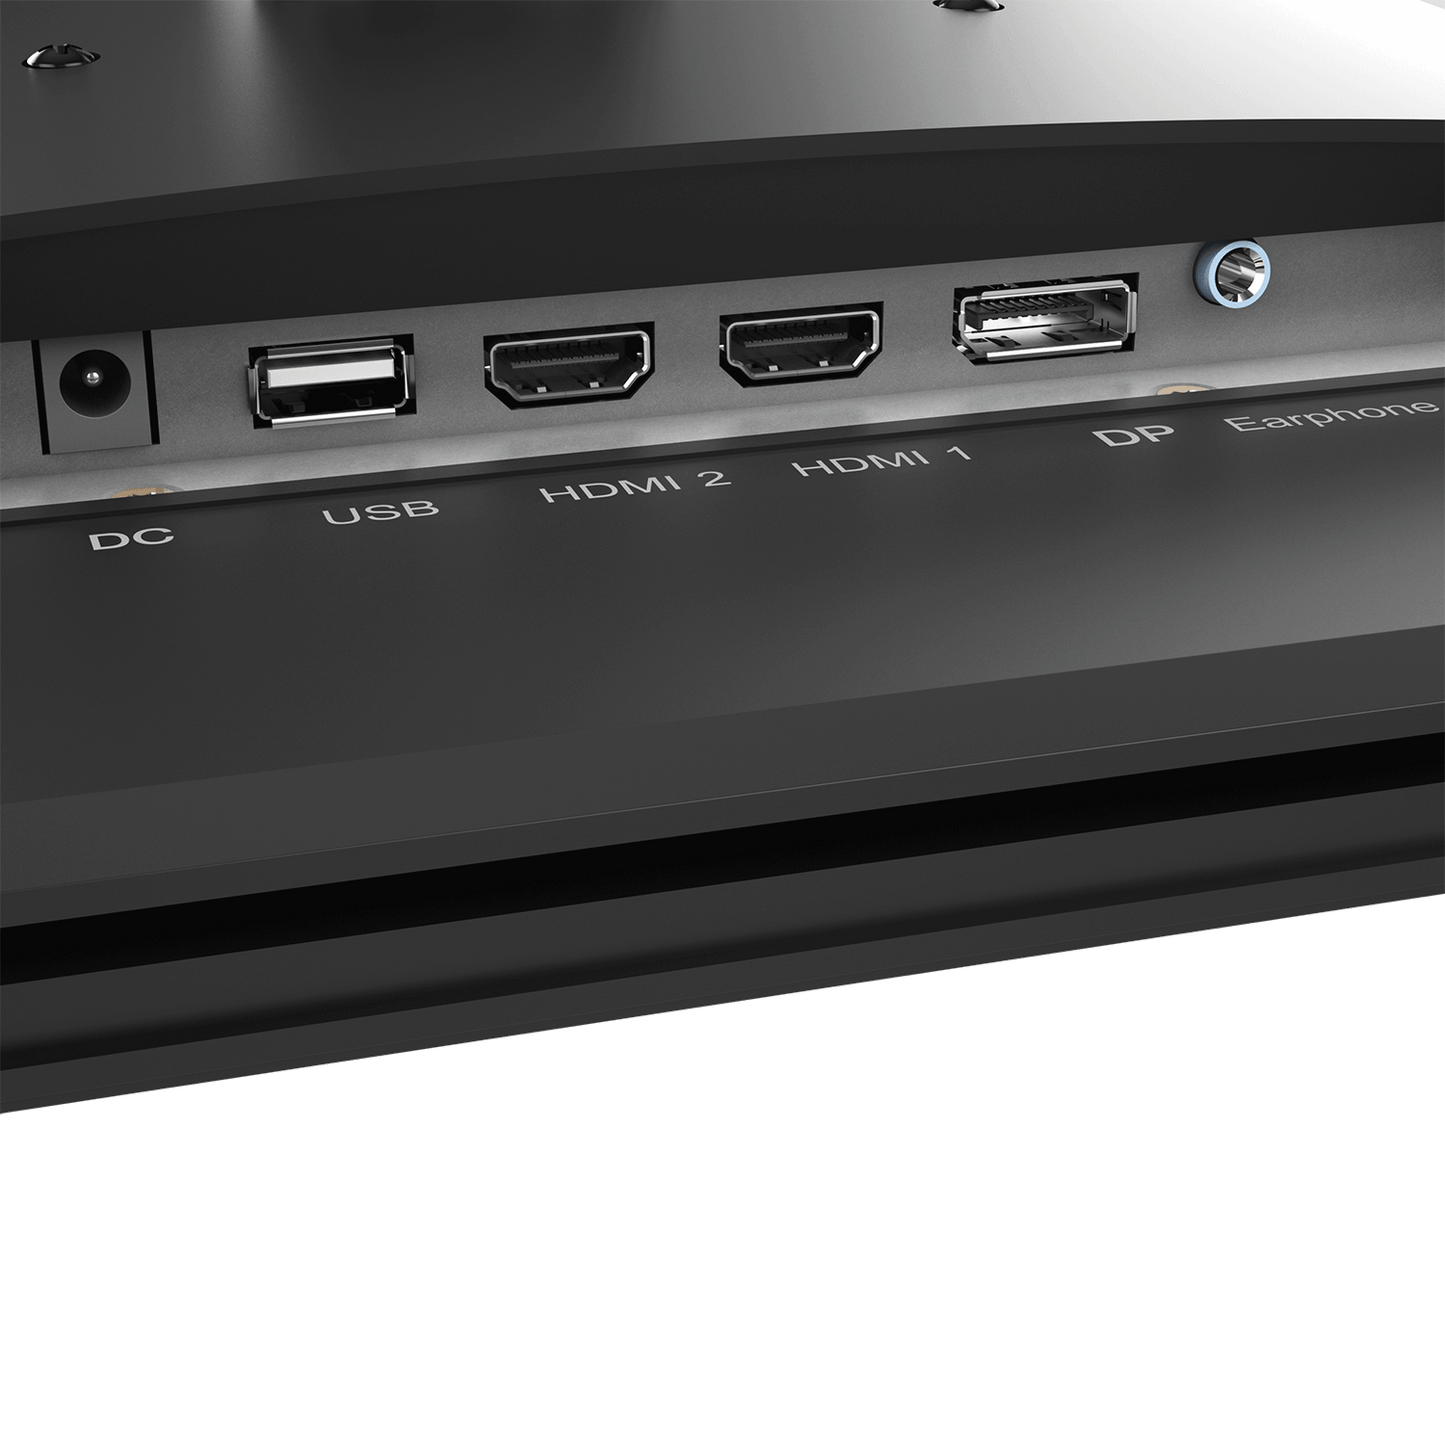 PX5 Hayabusa Gaming Monitor 25in - Certified Refurbished